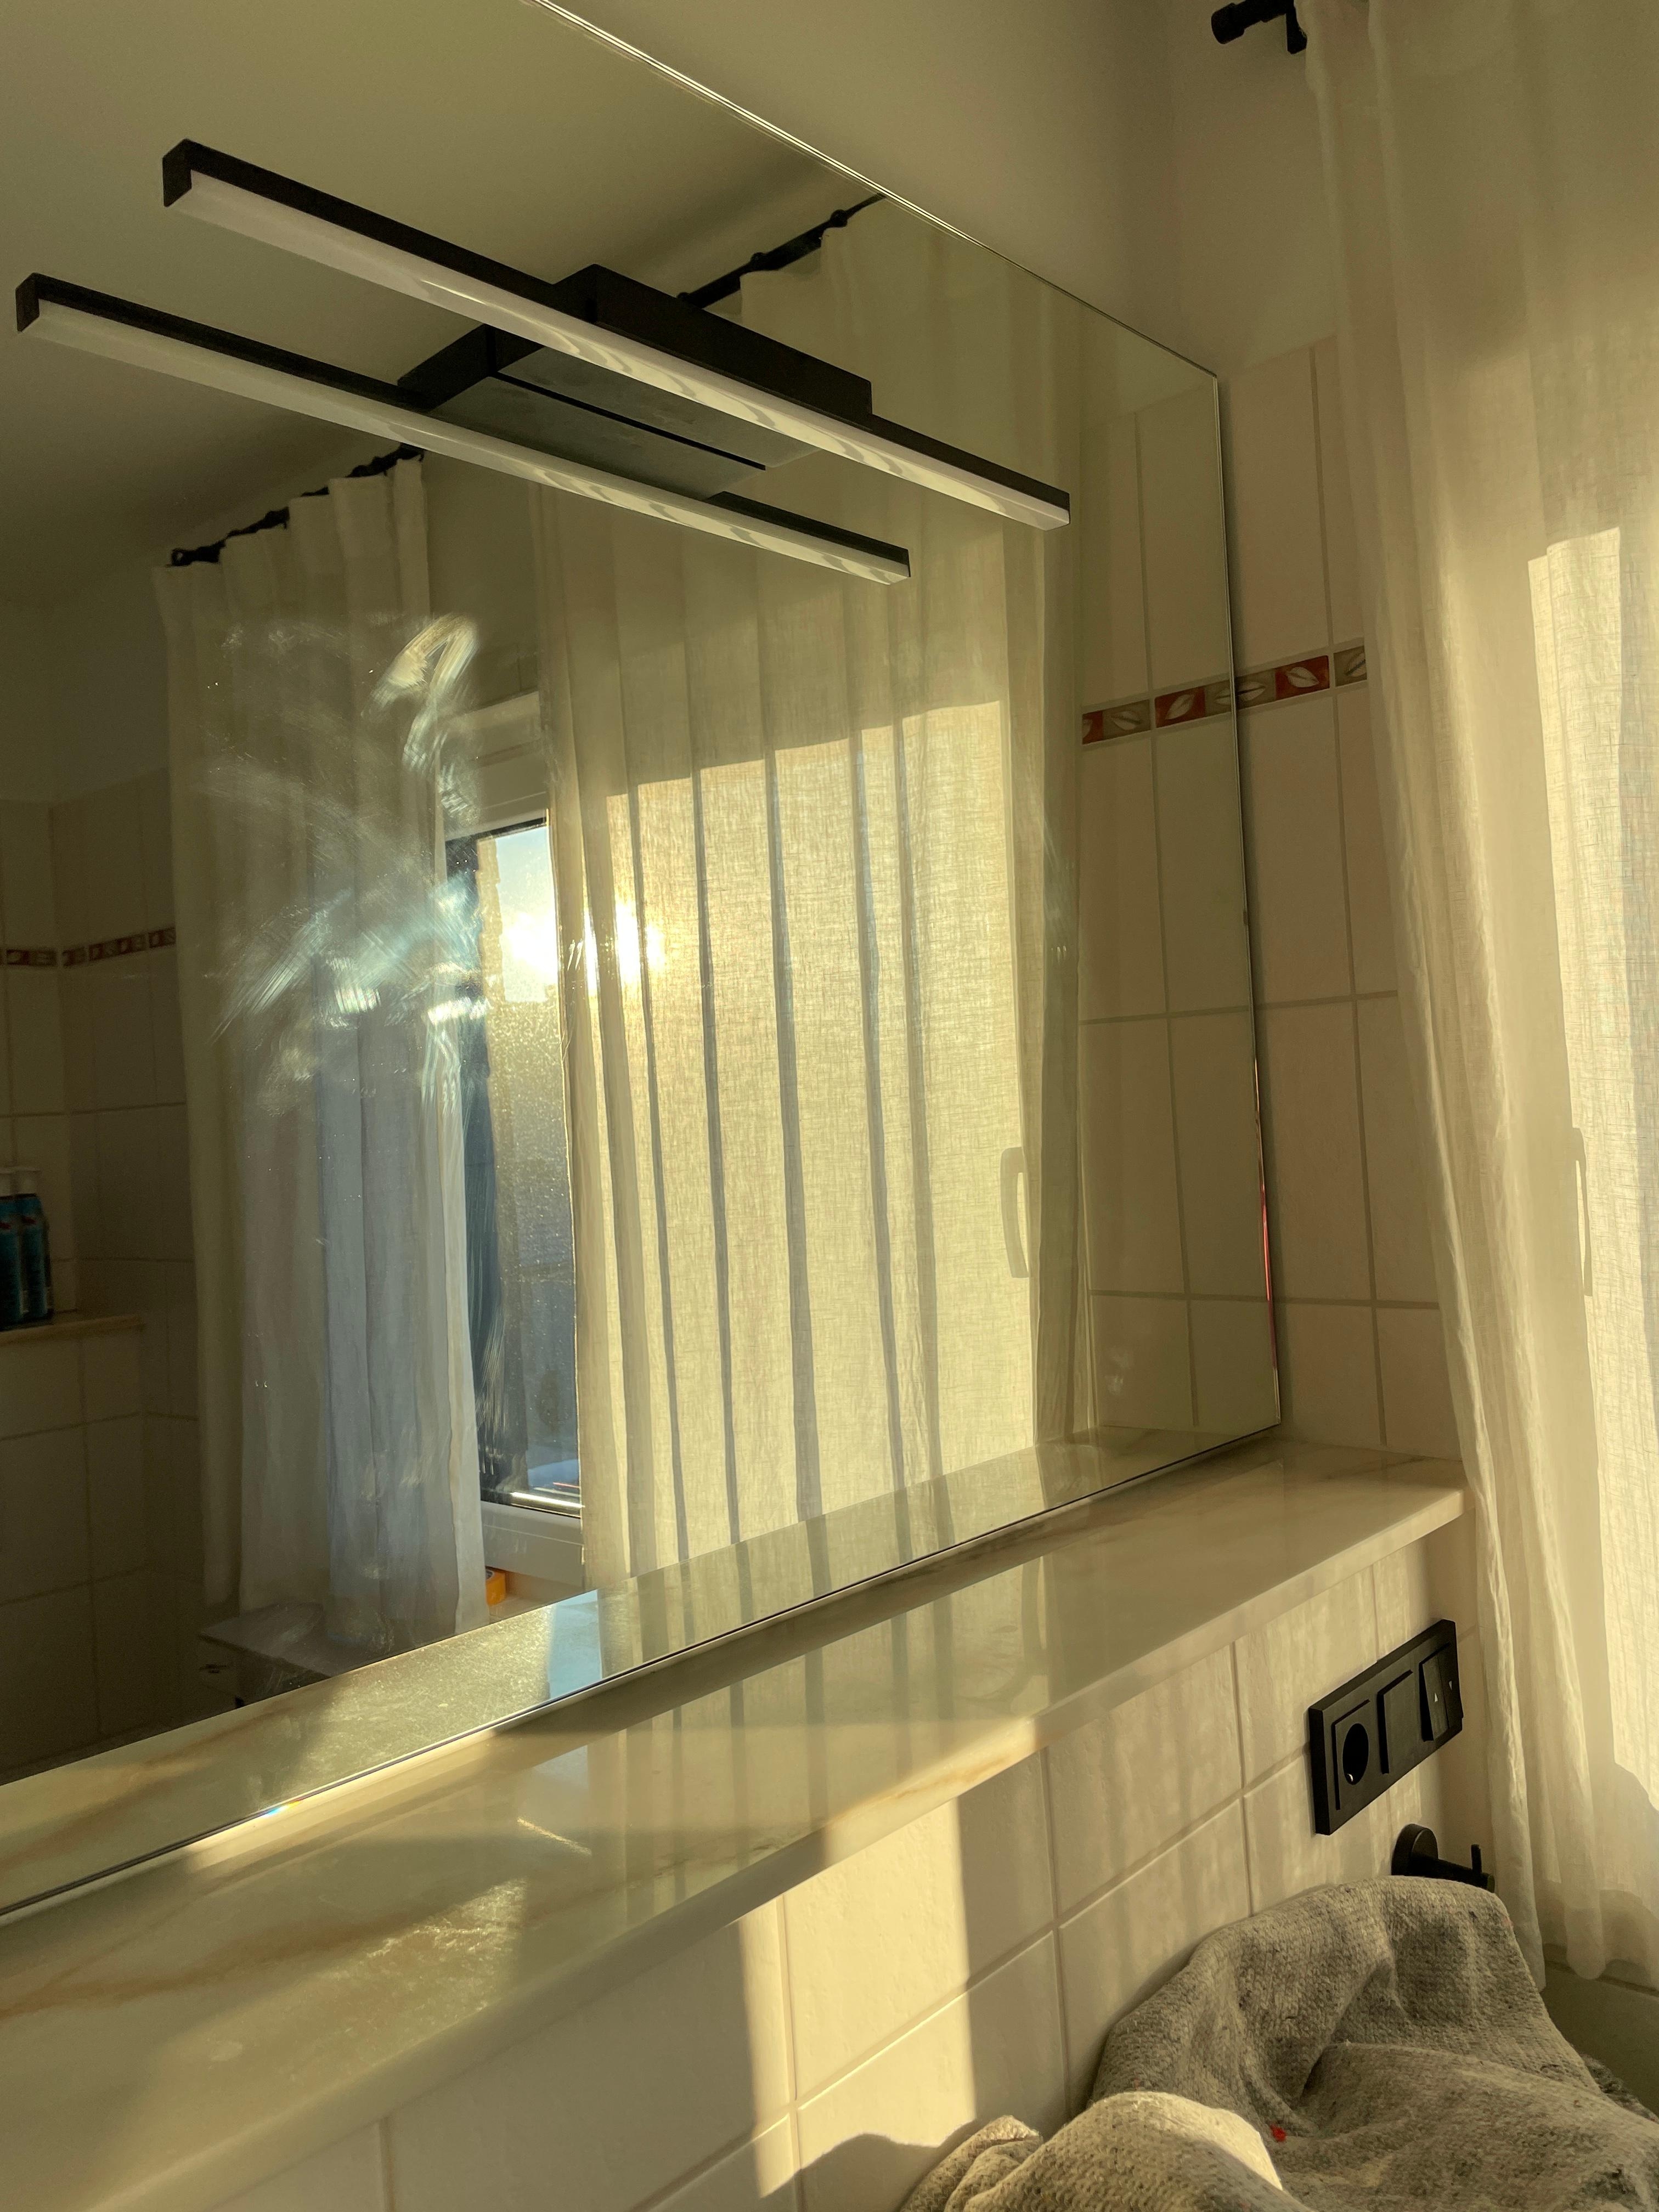 Endlich haben wir einen Spiegel mit Hotelflair 🧖‍♀️

#bad #badezimmerspiegel #badrenovierung #reihenhaus